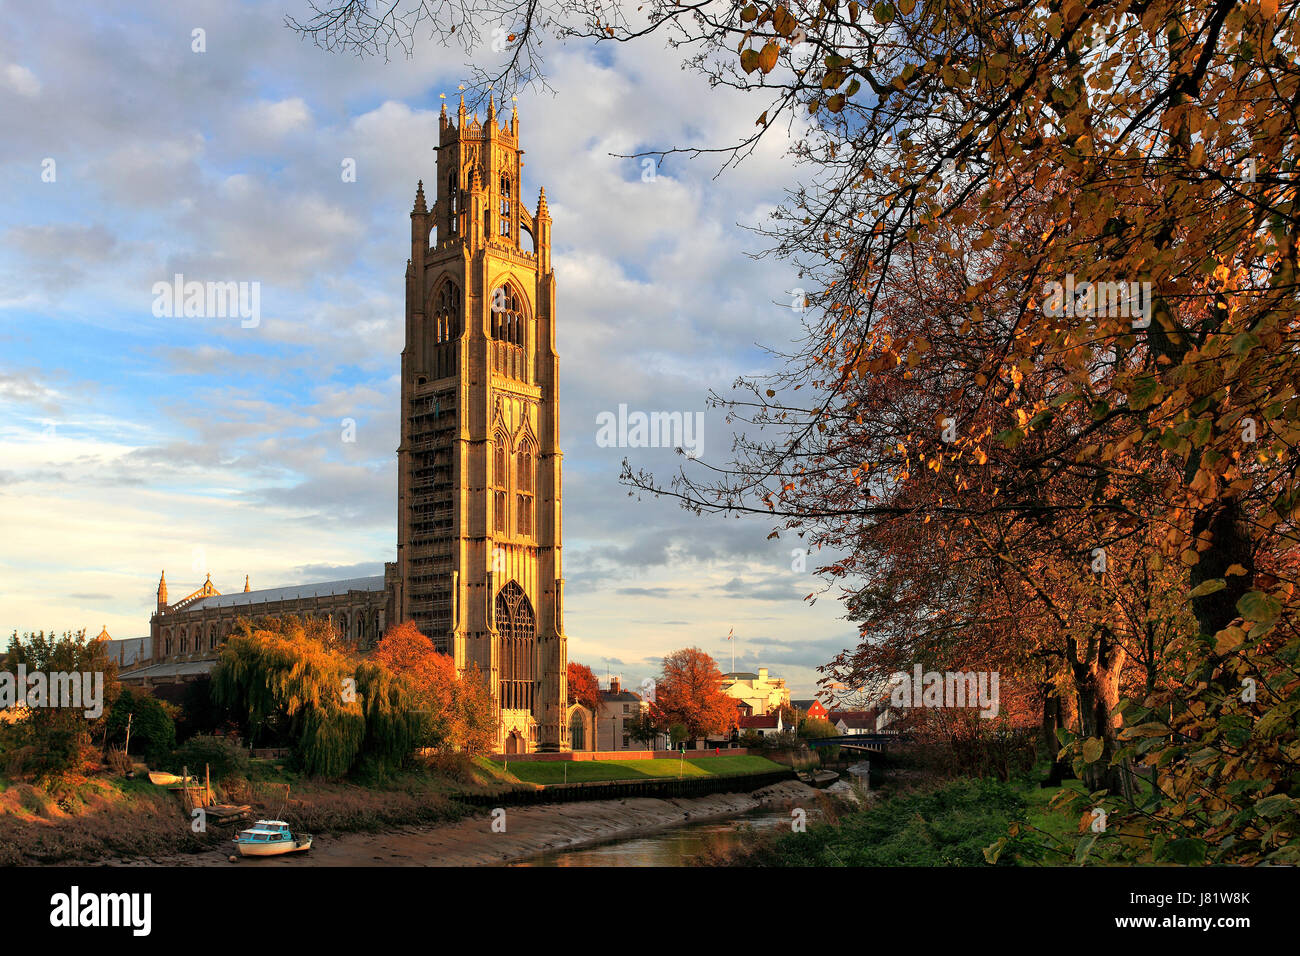 Atardecer de otoño, St Botolphs iglesia ( Boston Stump ), la ciudad de Boston, Condado de Lincolnshire, Inglaterra, Reino Unido. Foto de stock